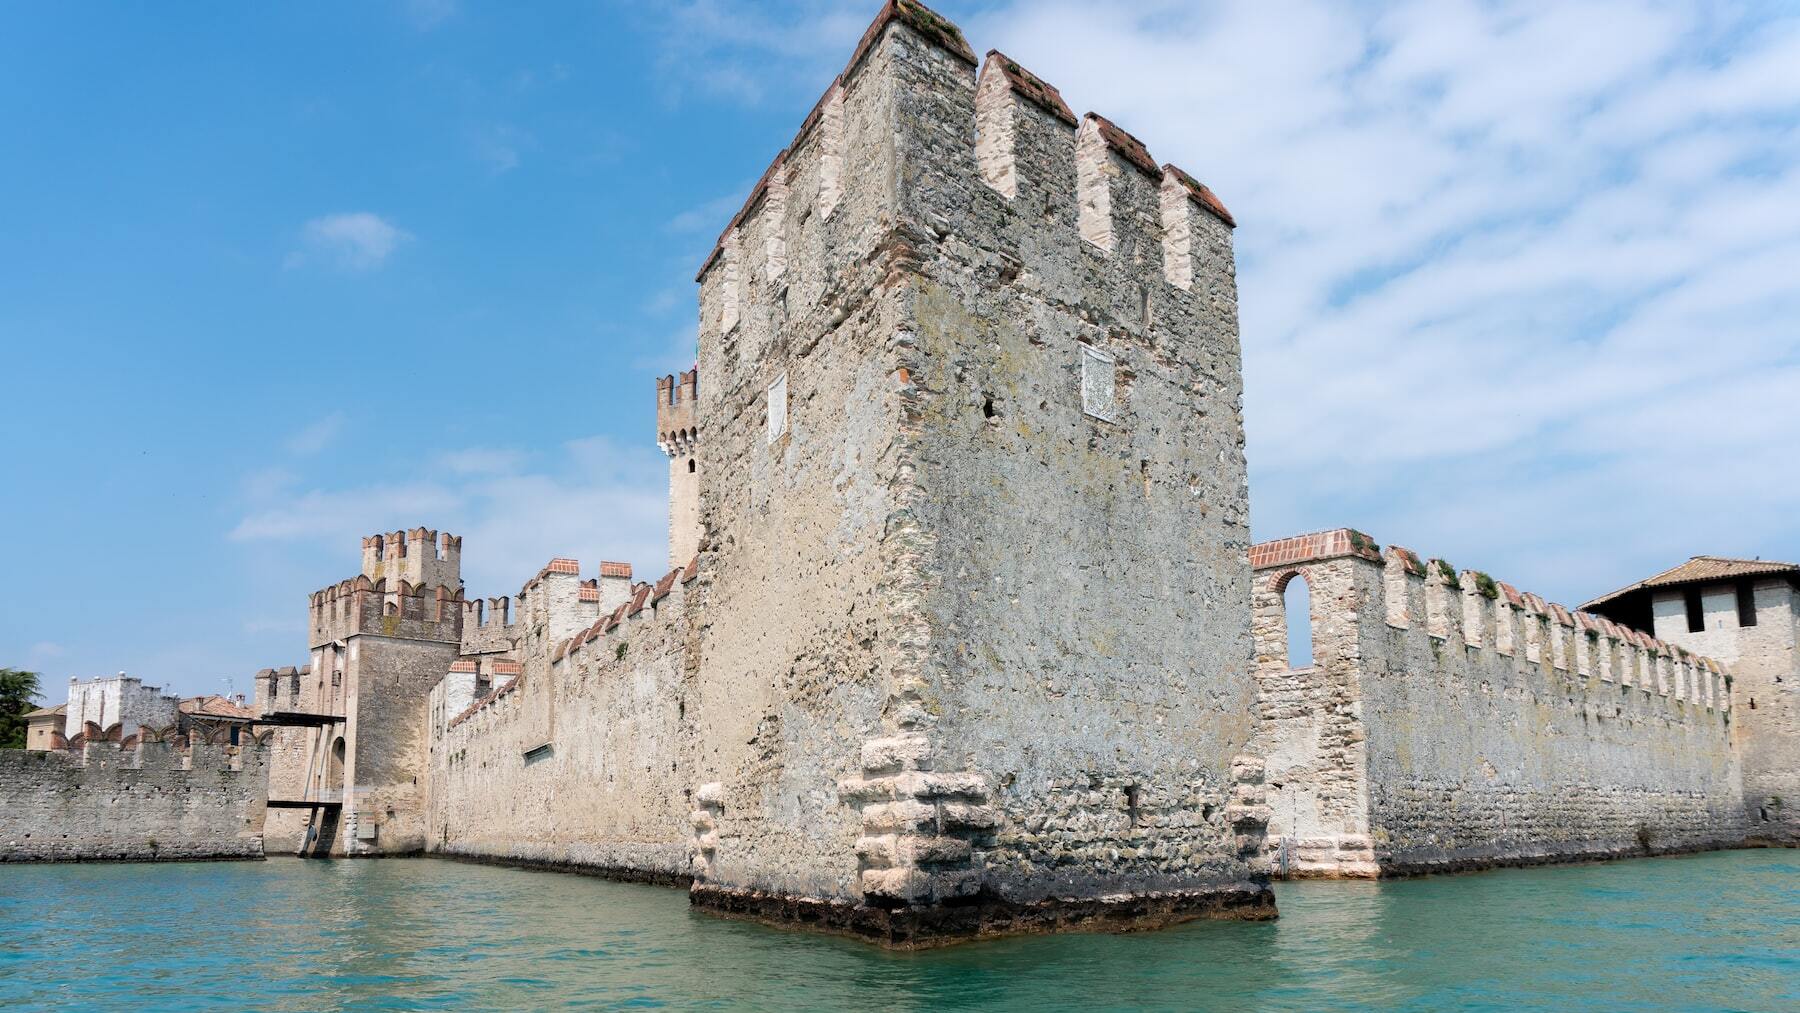 El castillo situado sobre un lago de aguas turquesas que enamora a los turistas